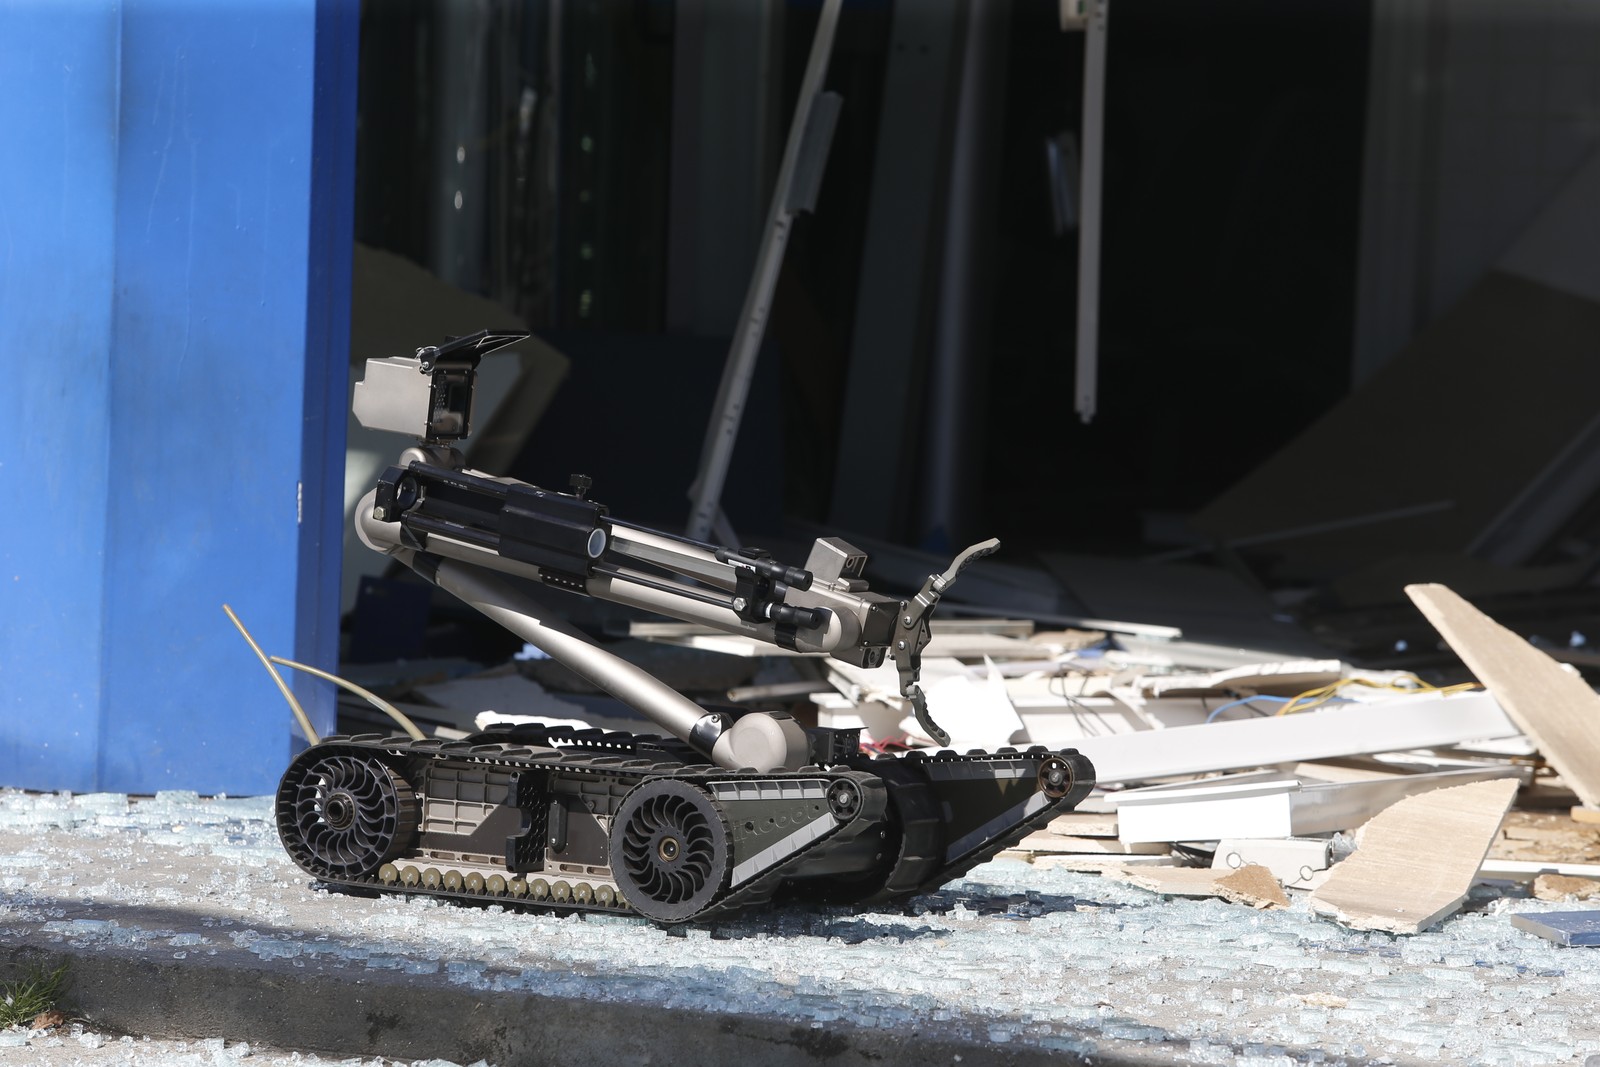 Robô do esquadrão antibombas foi usado na agência para localizar explosivos deixados por bandidos — Foto: Fabiano Rocha/Agência O Globo